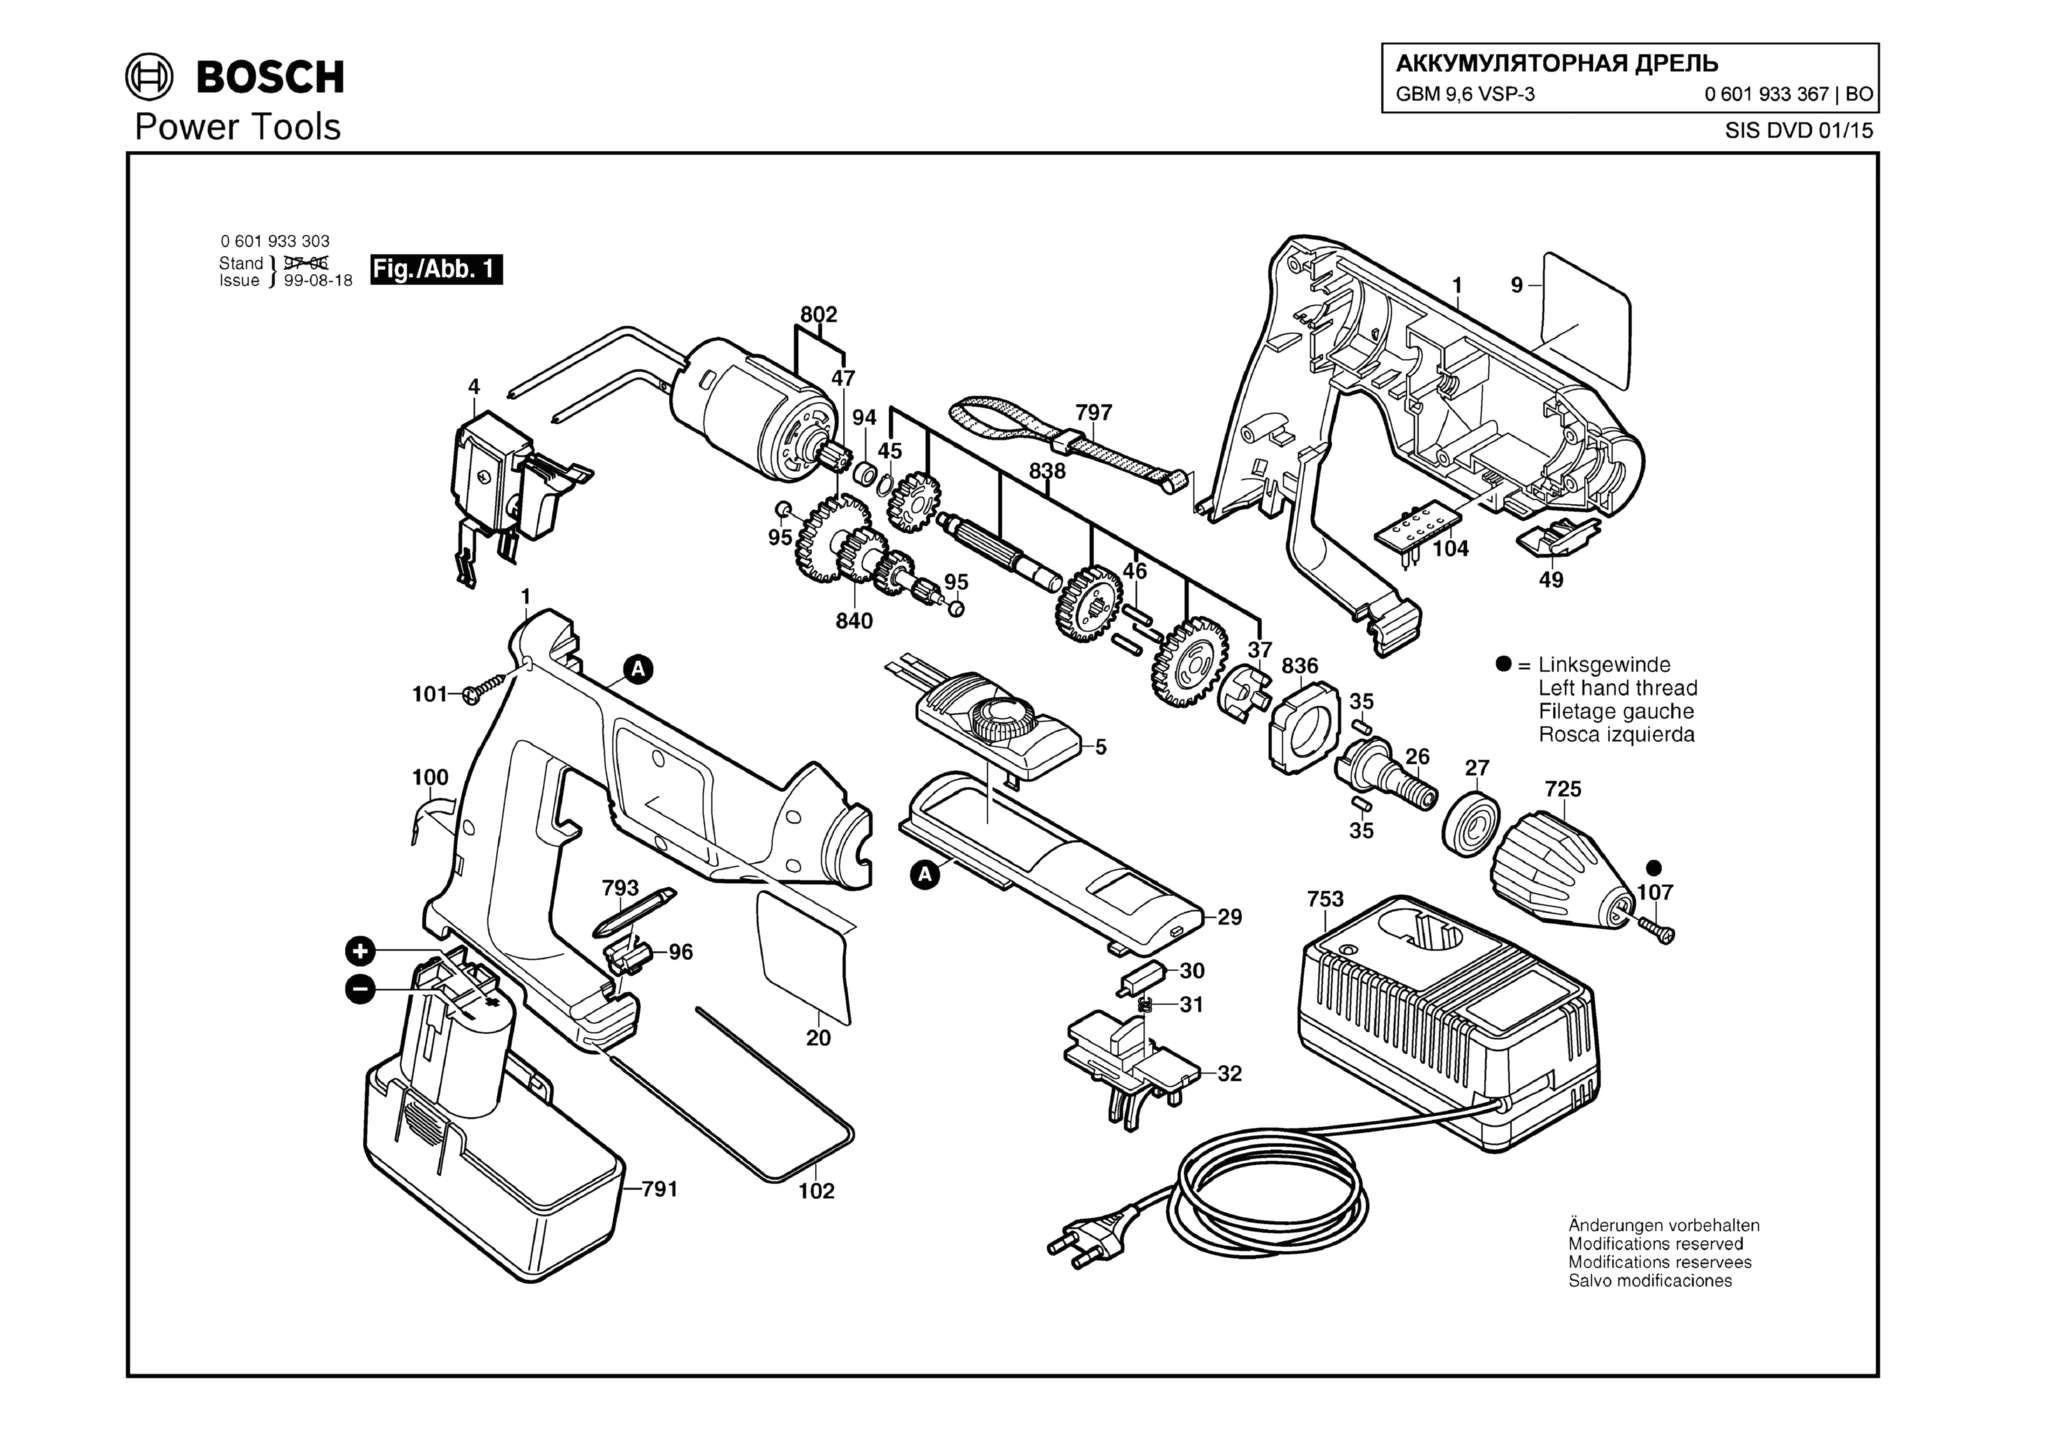 Запчасти, схема и деталировка Bosch GBM 9,6 VSP-3 (ТИП 0601933367)